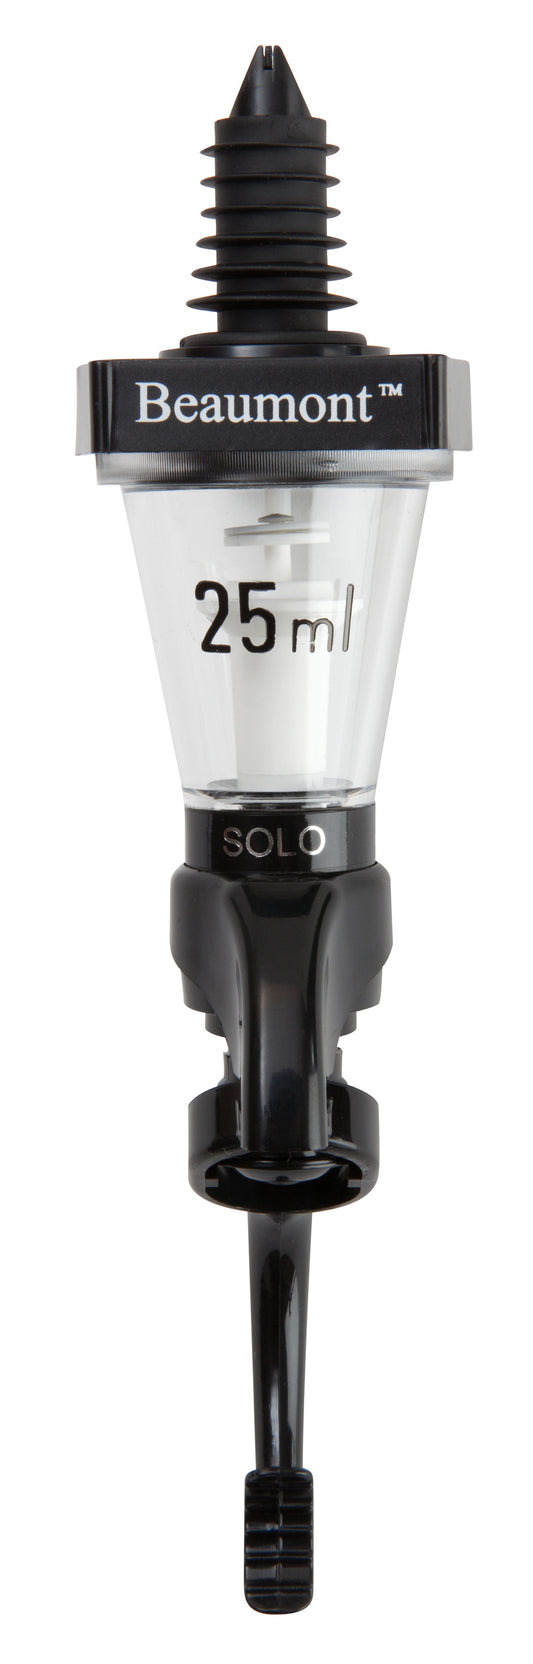 25ml Solo Professional Measure GS